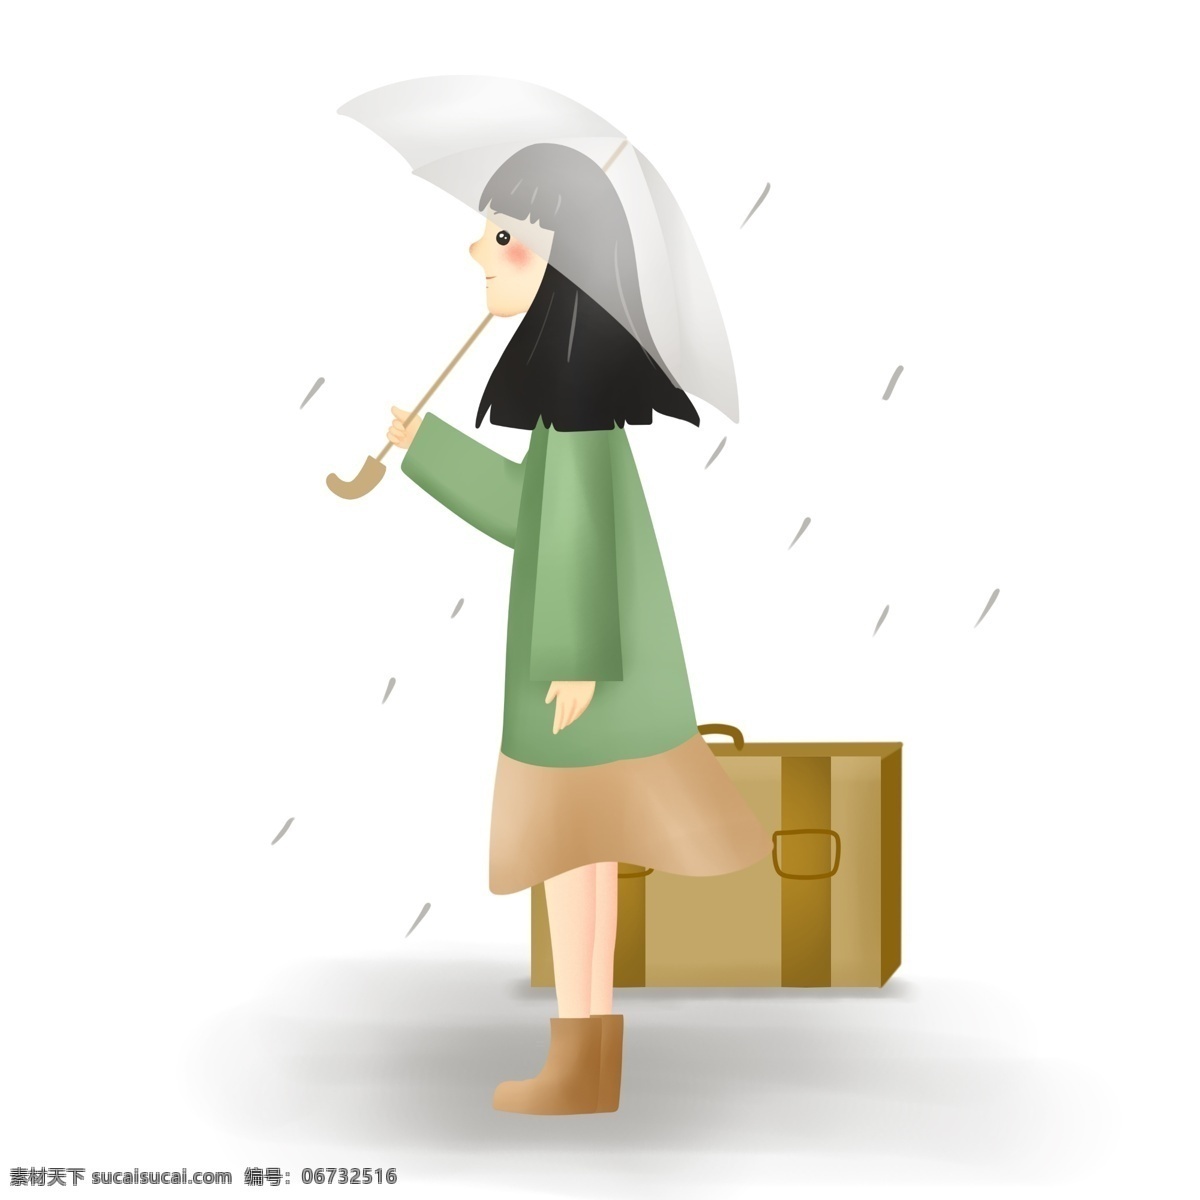 下雨天 撑伞 女孩 清明节 下雨 返乡 回乡 回家 行李箱 旅途 旅行 春雨 节气 雨水 雨伞 清明